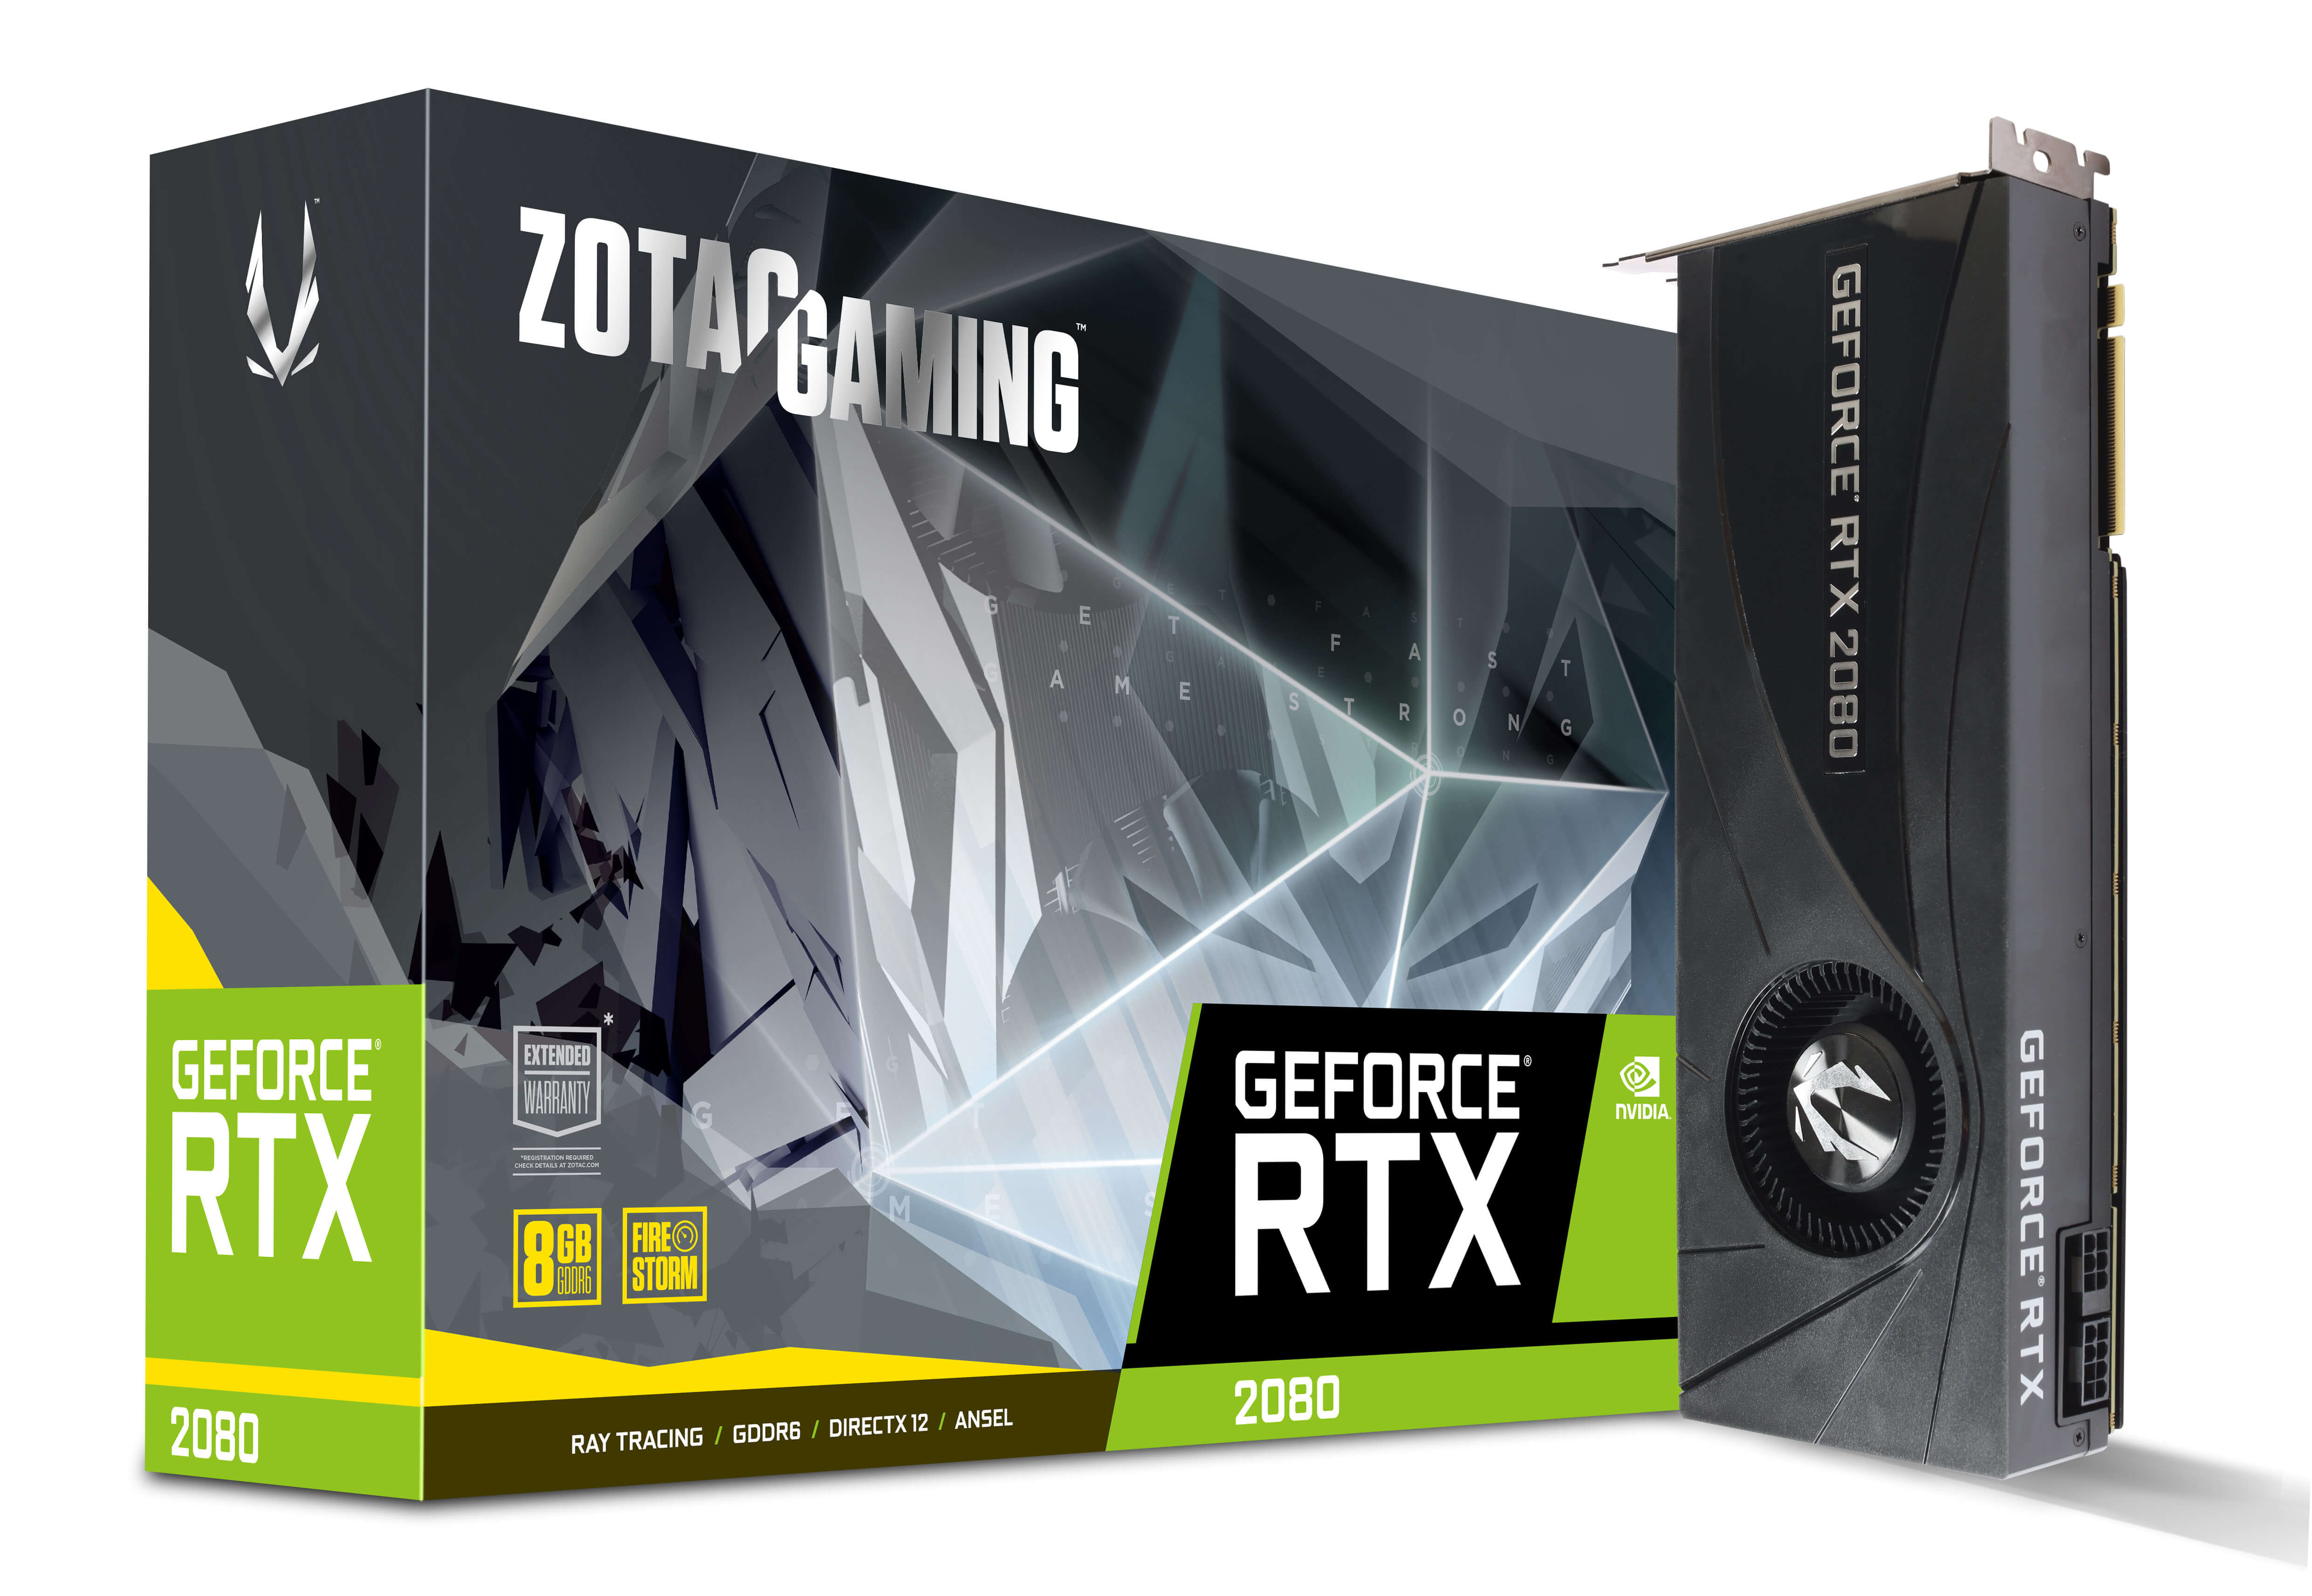 NP: La Próxima Generación de Gaming llega con las tarjetas gráficas GeForce® RTX Series 20 de ZOTAC GAMING